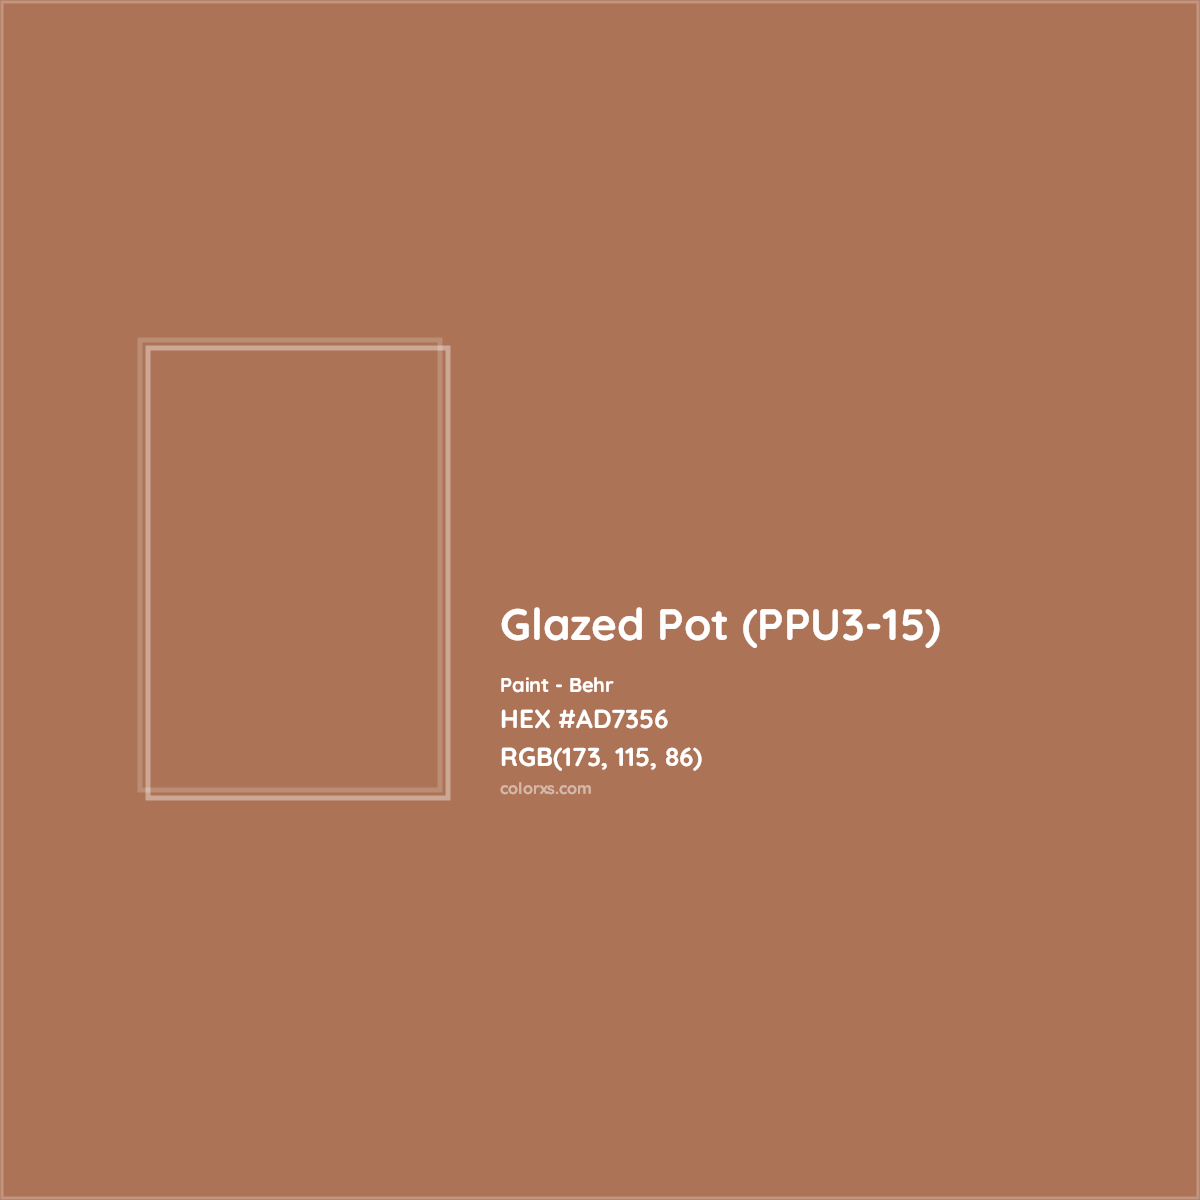 HEX #AD7356 Glazed Pot (PPU3-15) Paint Behr - Color Code